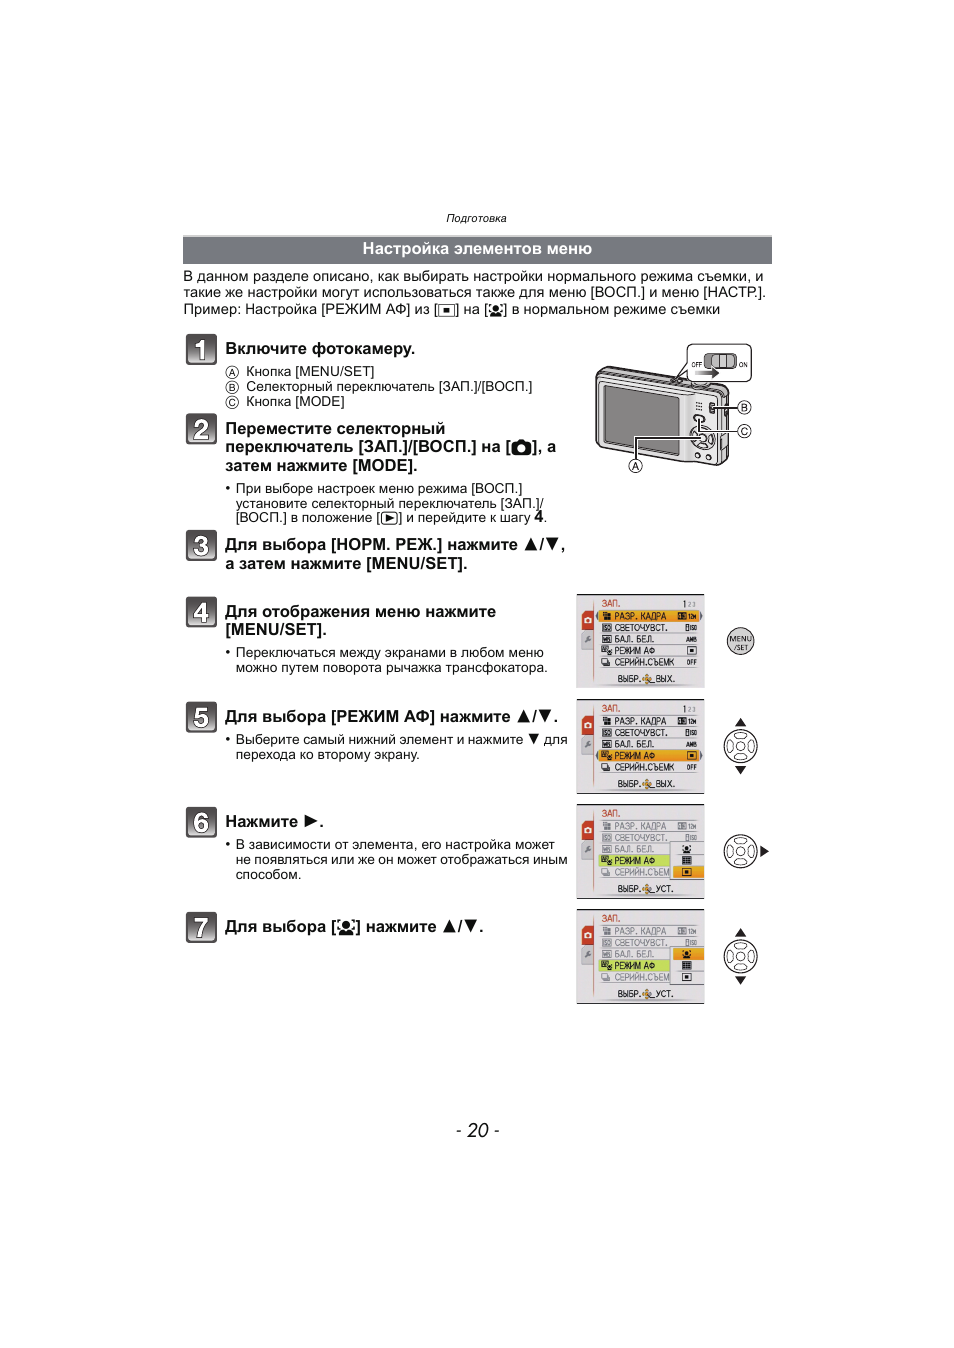 Настройка элементов меню, P20) | Инструкция по эксплуатации Panasonic KX-MC6020 | Страница 20 / 130